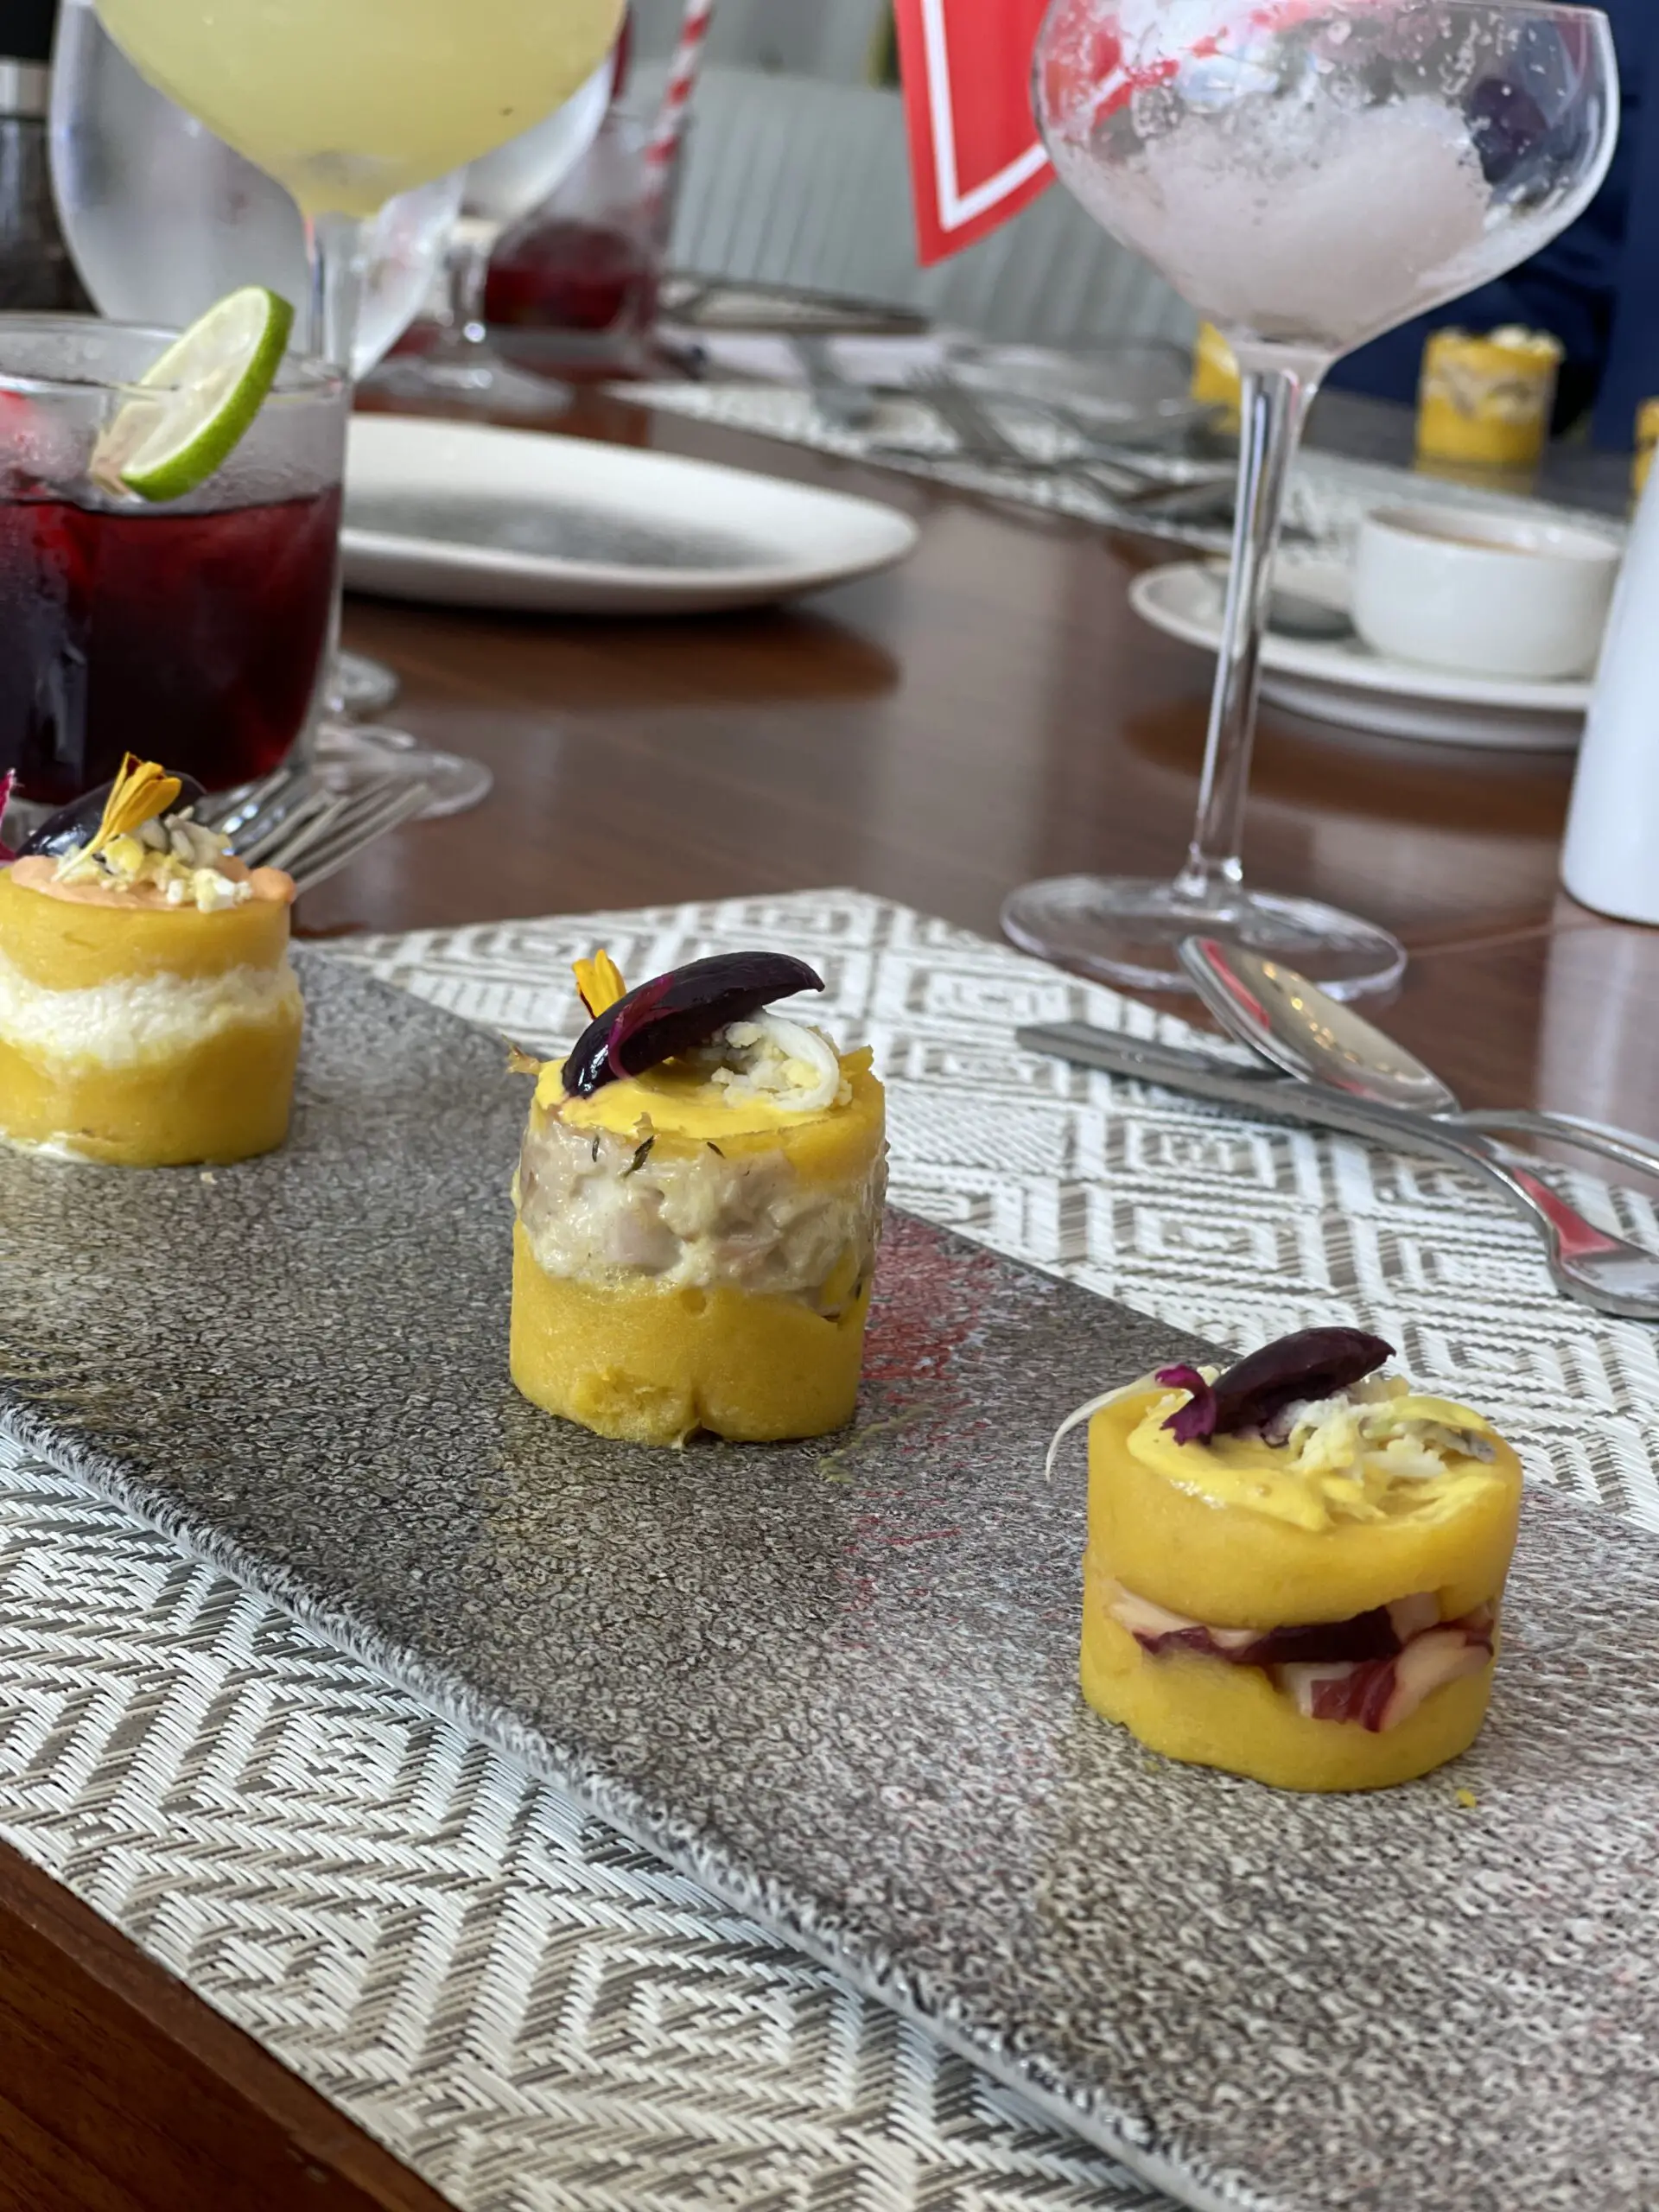 Peruvian Menu Tasting: A Culinary Journey To Remember